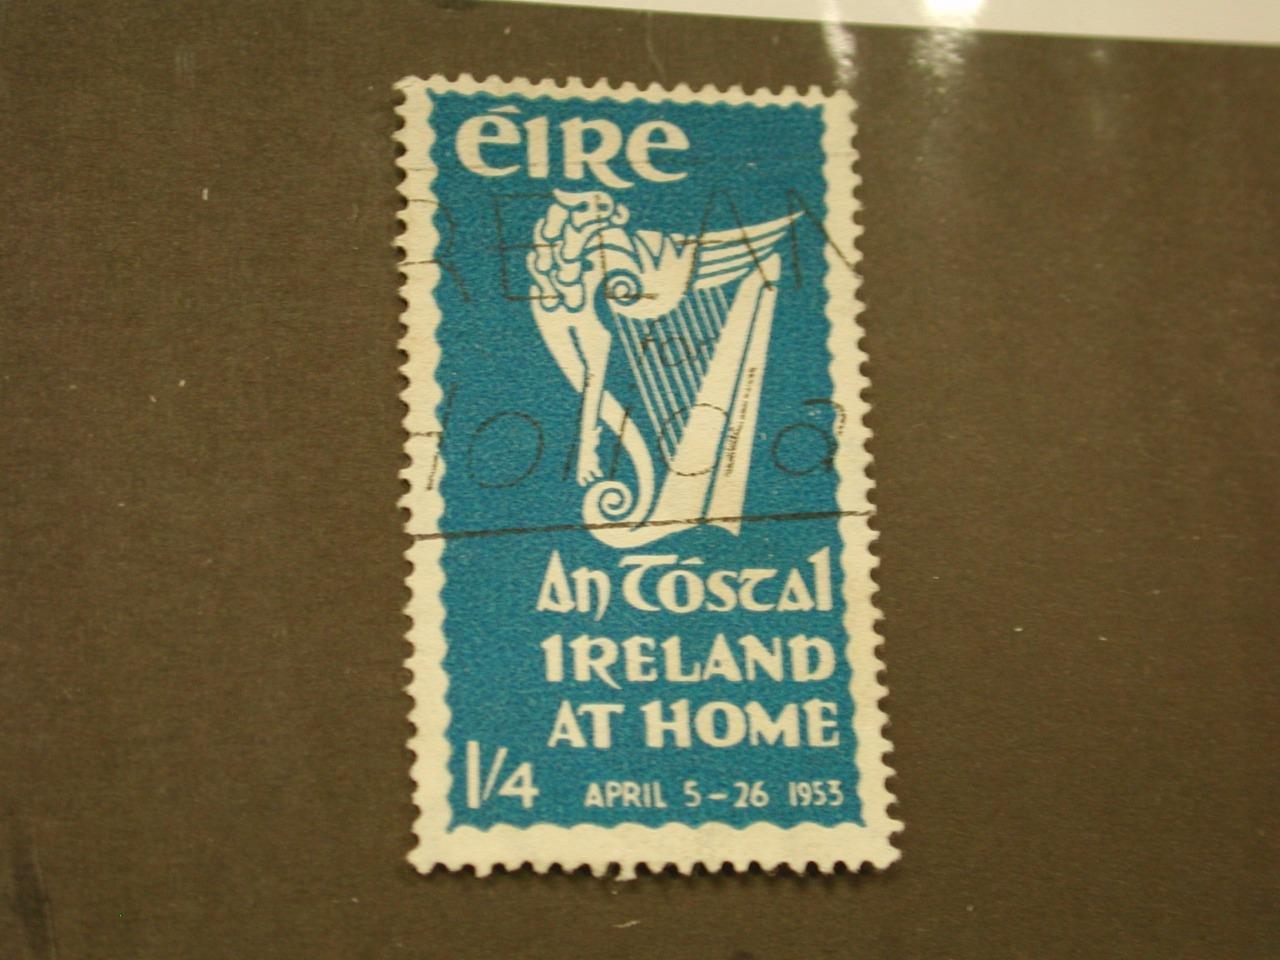 Ireland, Postage Stamp, #148 Used, 1953